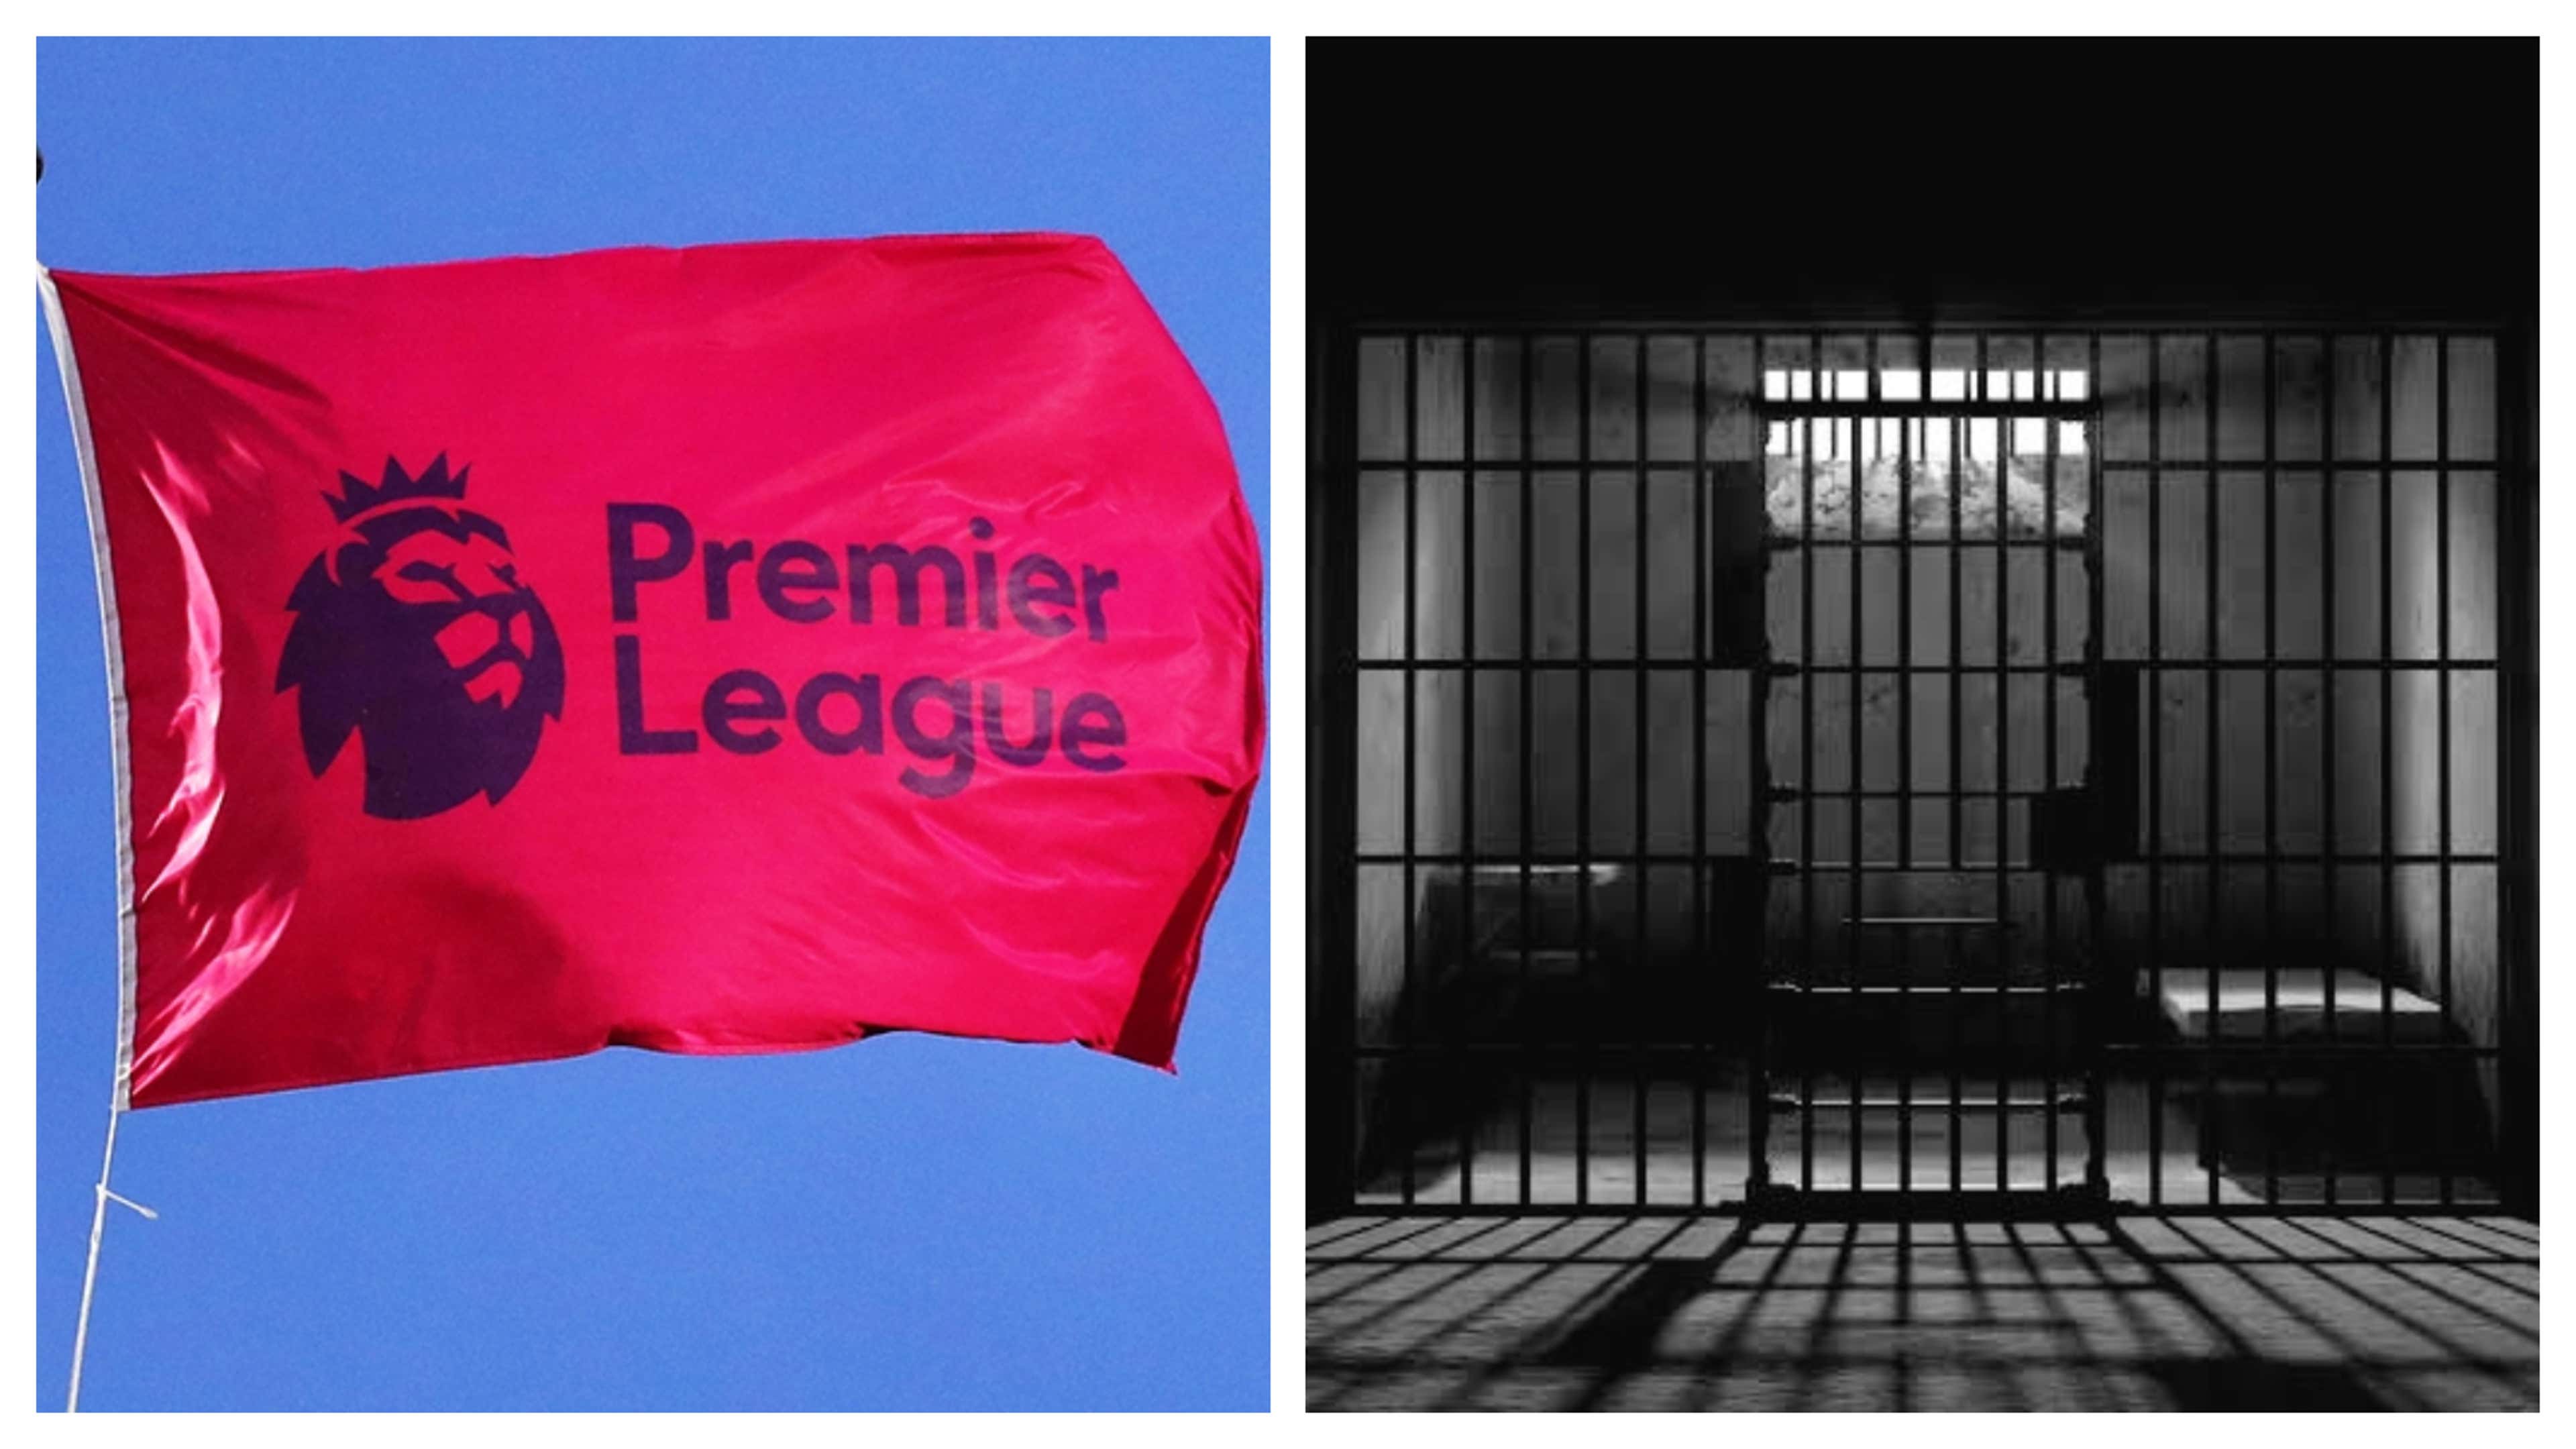 Premier League & Prison